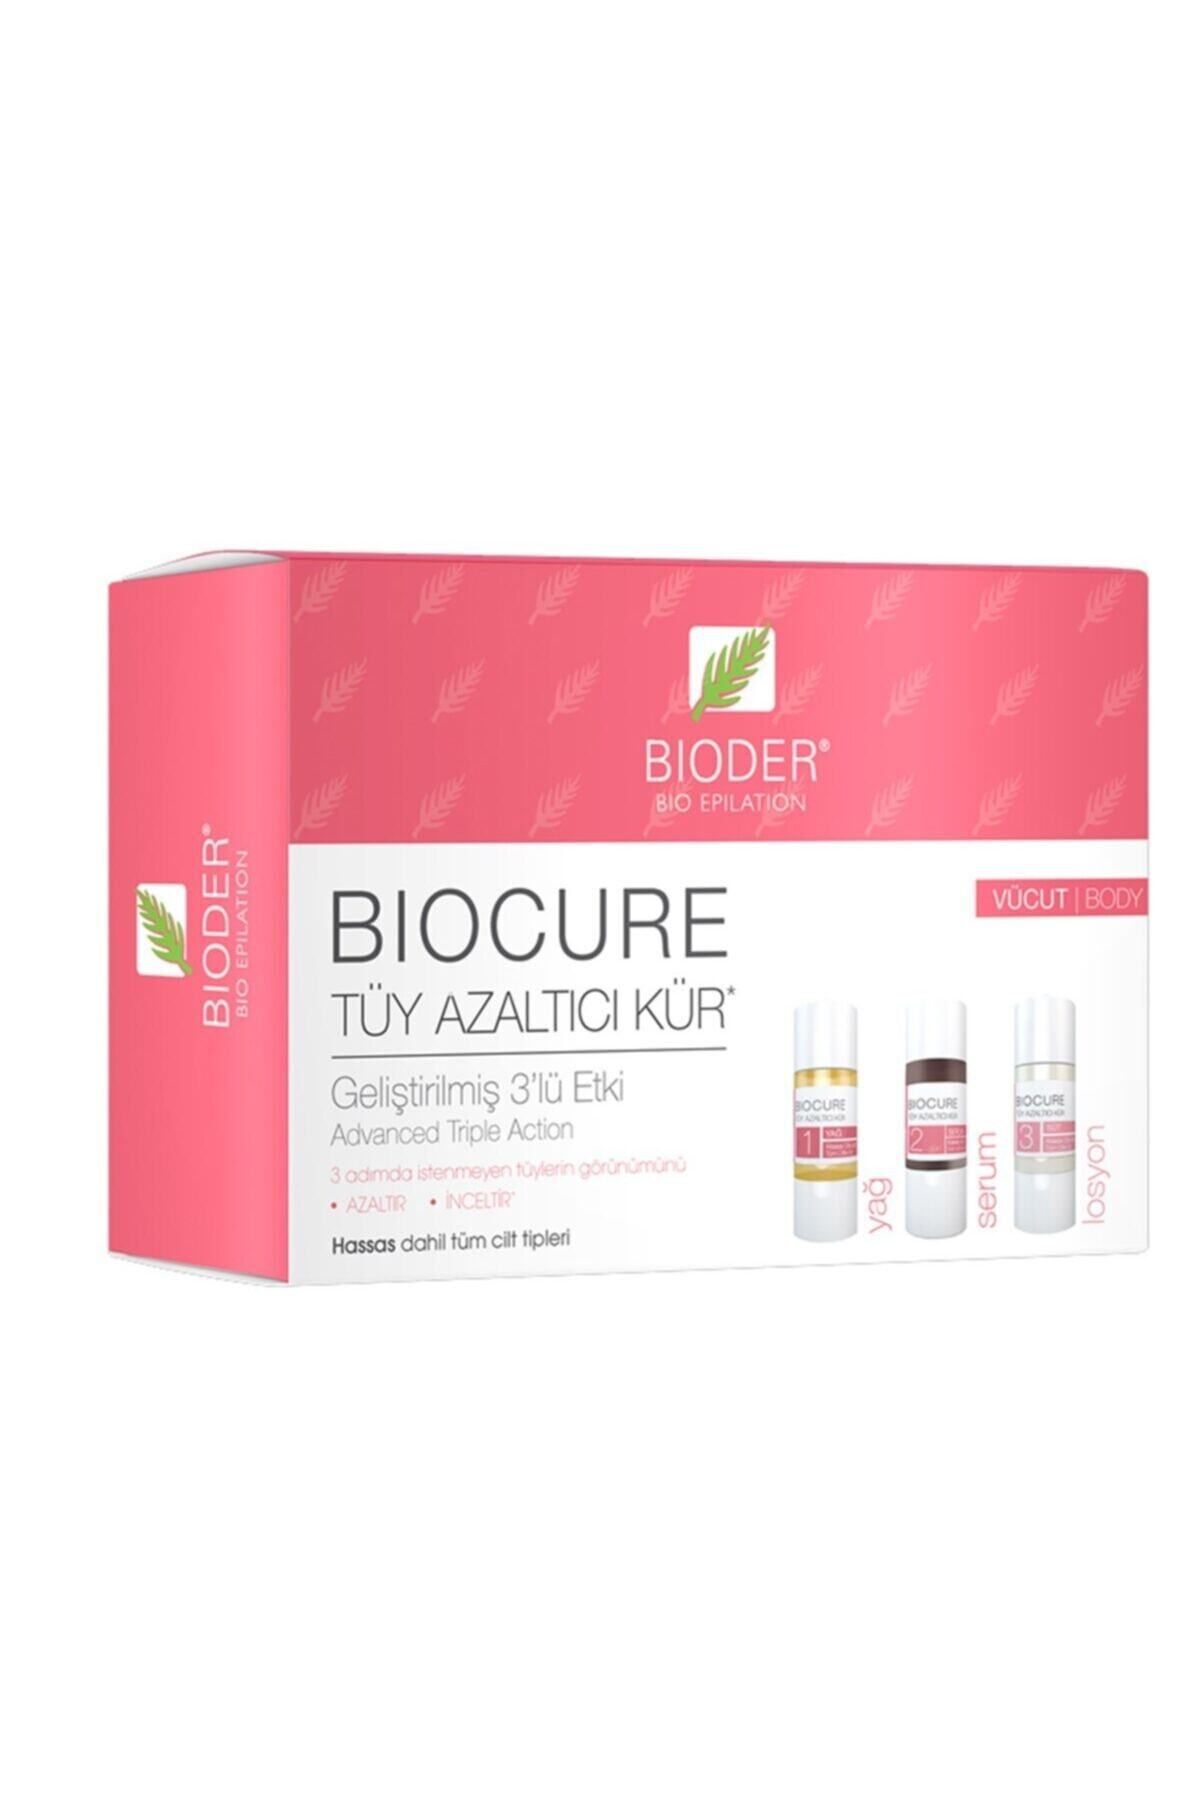 Bioder Biocure Tüy Azaltıcı Kür Hassas Dahil Tüm Cilt Tipleri Için Vücut Bölgesi 3 X 10 Ml